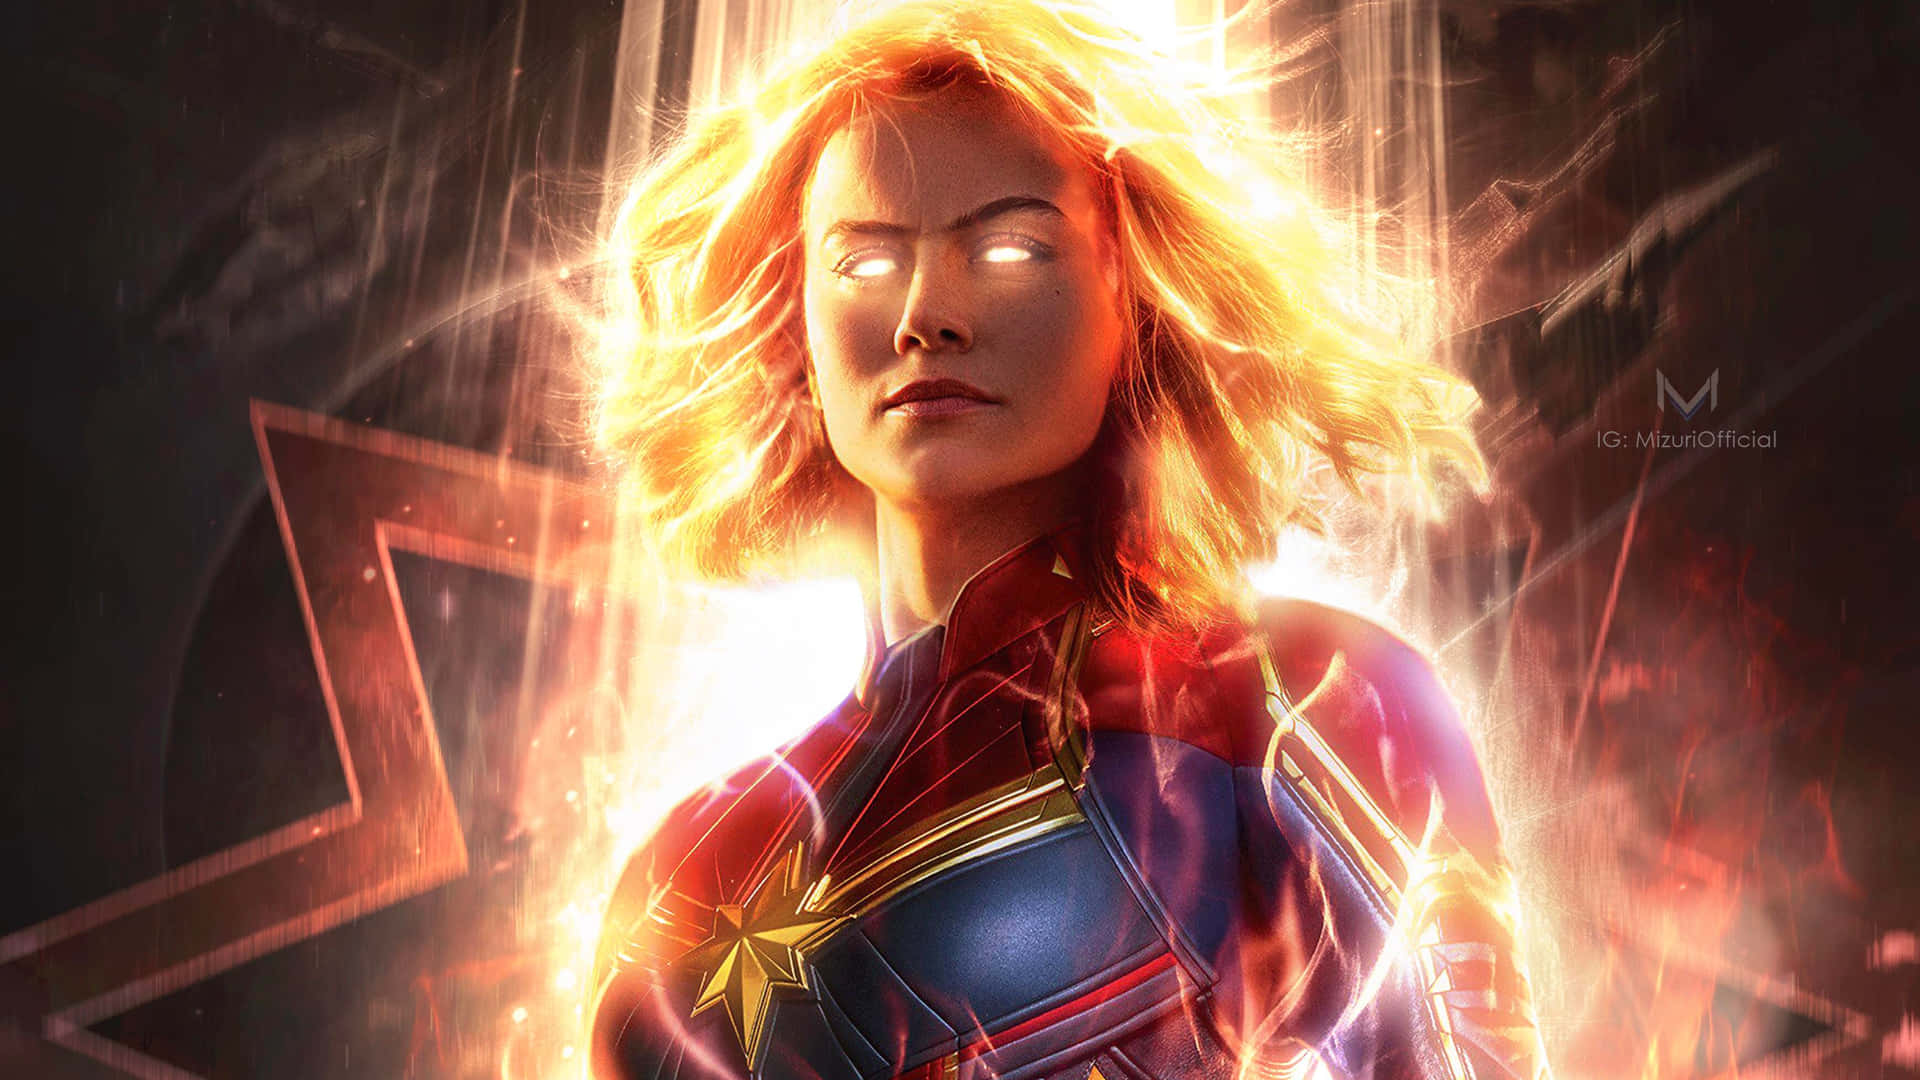 Bildpå Brie Larson Som Carol Danvers (captain Marvel) I Captain Marvel 2. Wallpaper